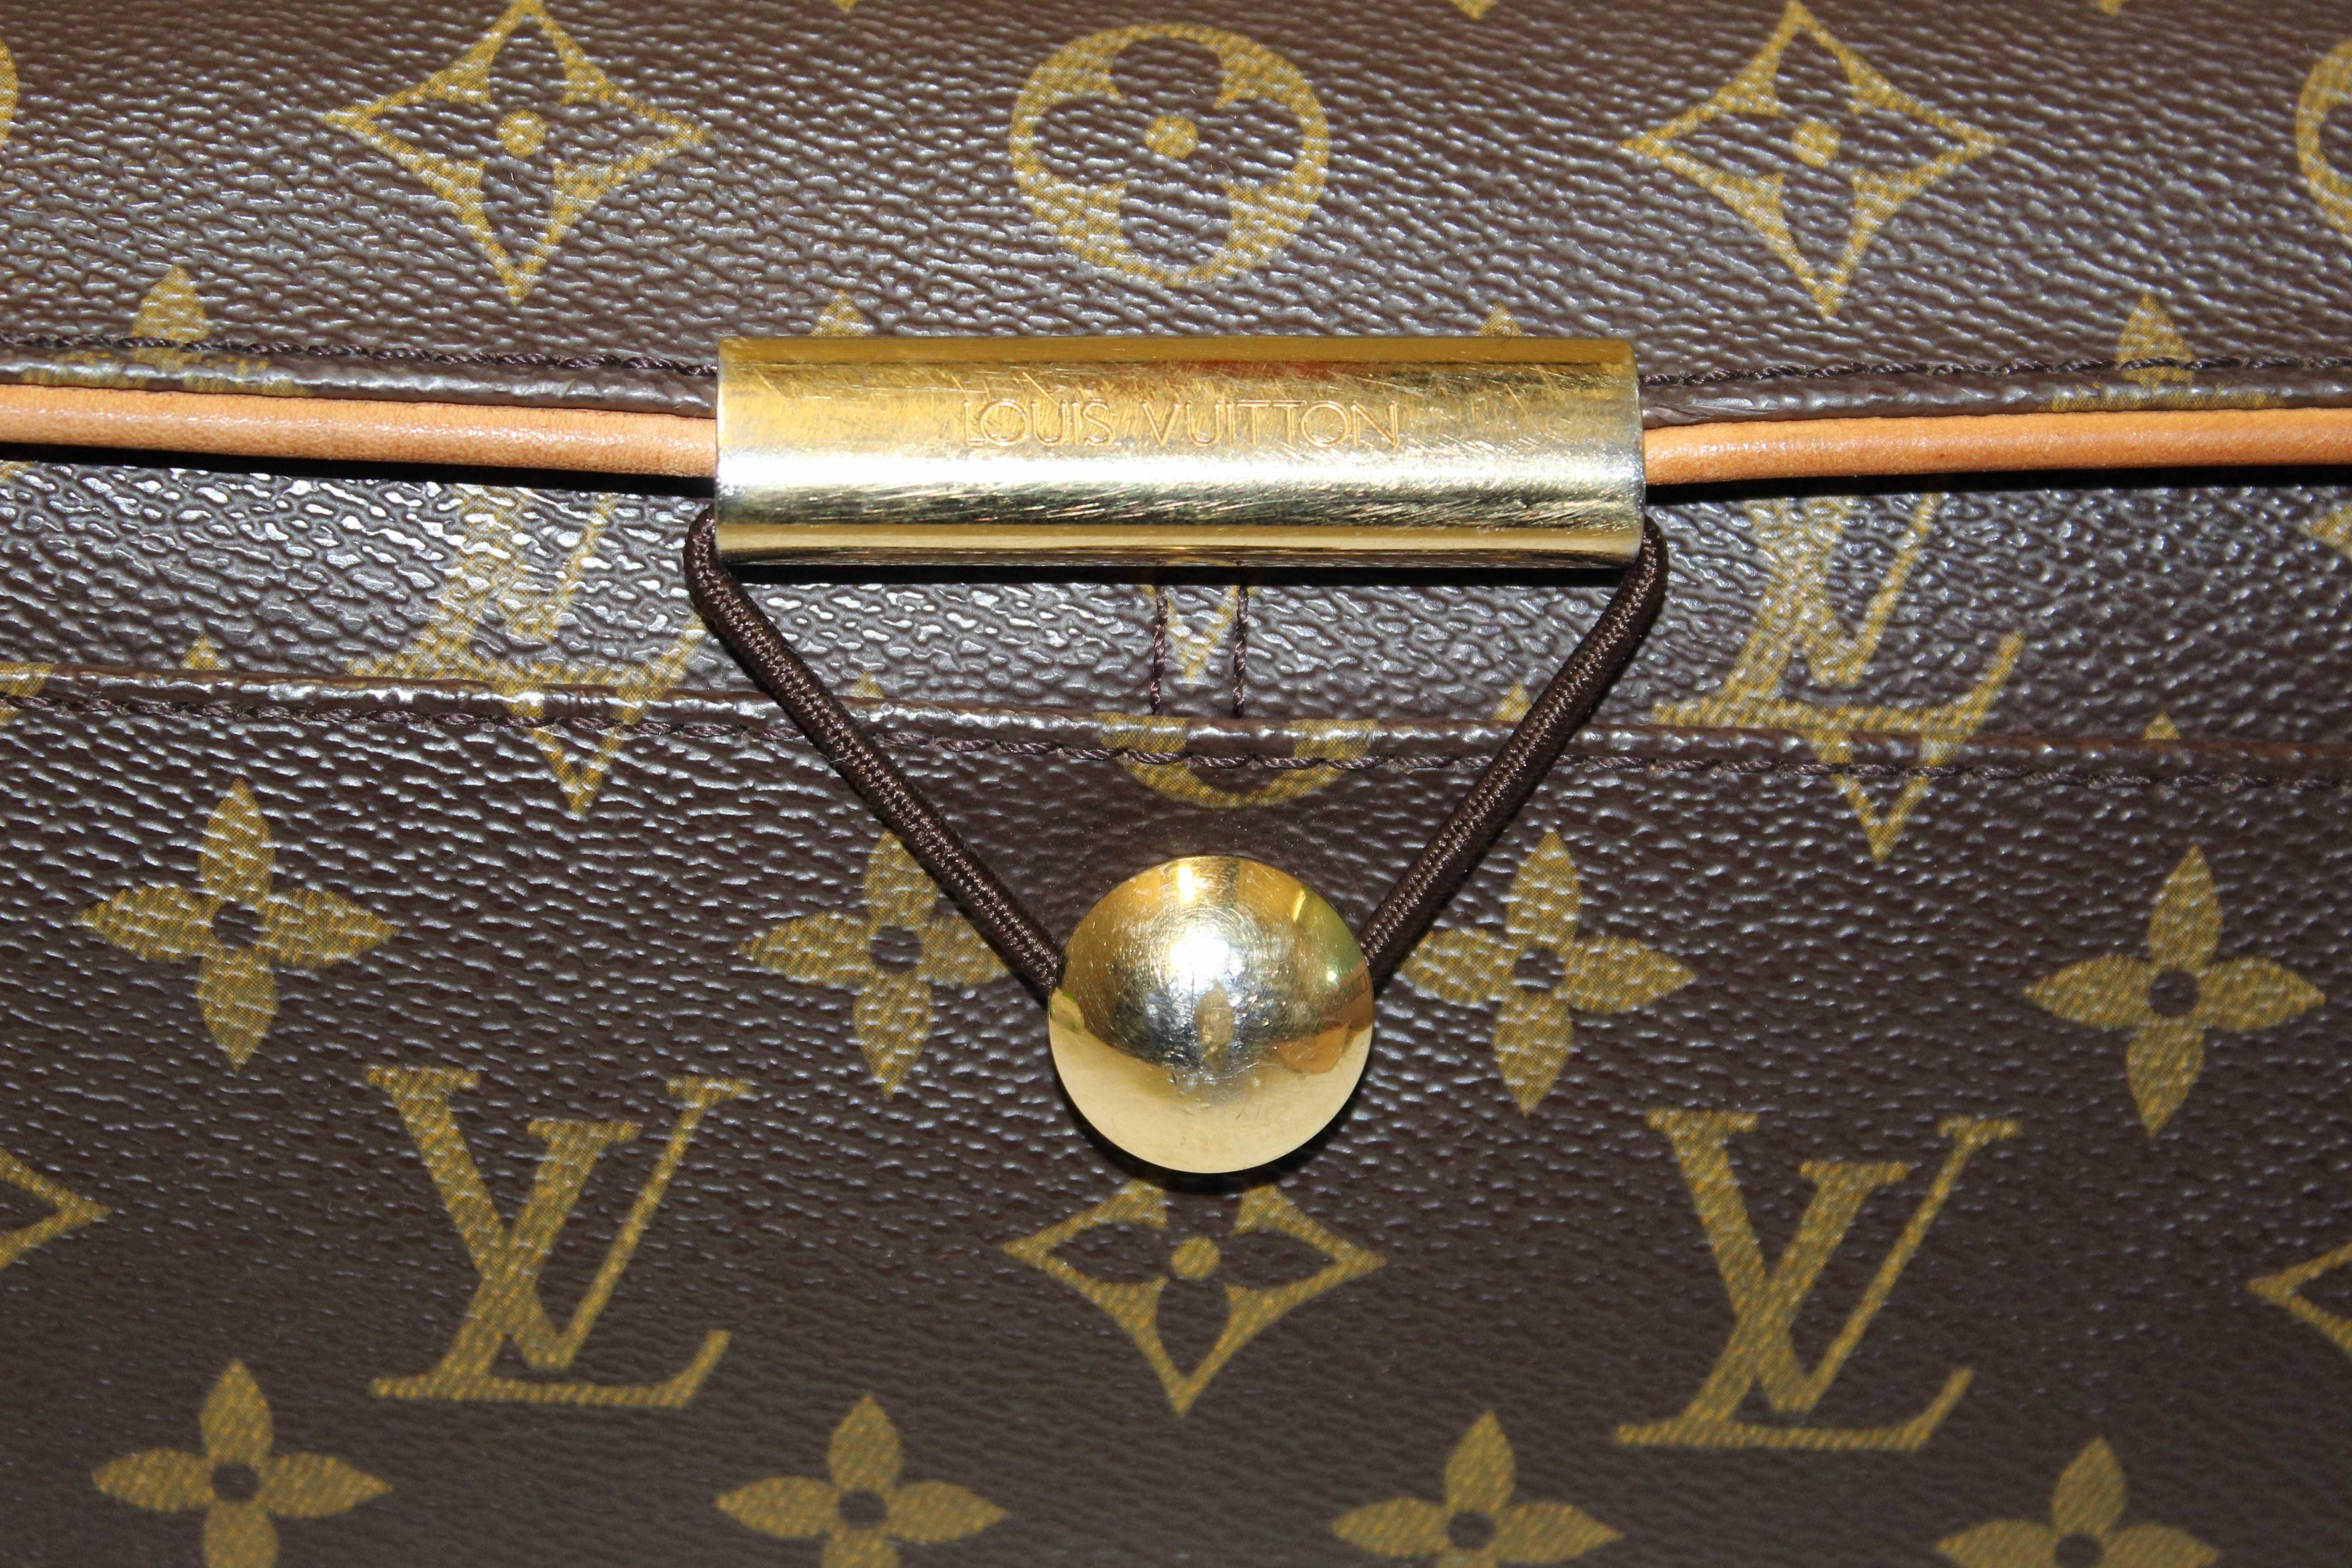 Vintage Louis Vuitton Messenger Bag - Shop Accessories - Shop Jewelry,  Watches & Accessories